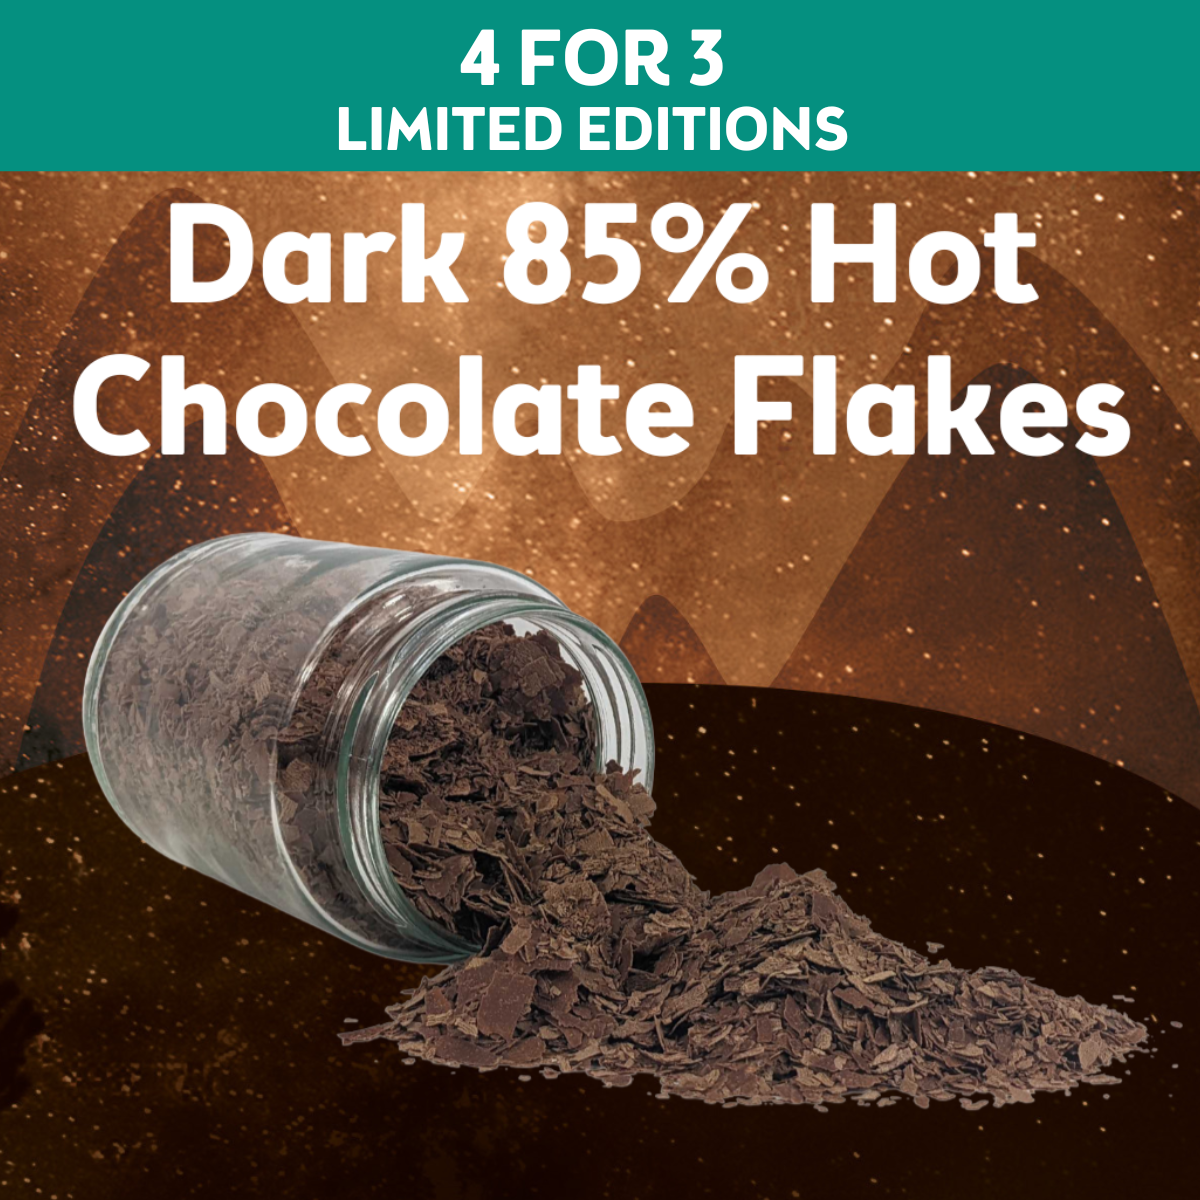 Dark 85% Hot Chocolate Flakes